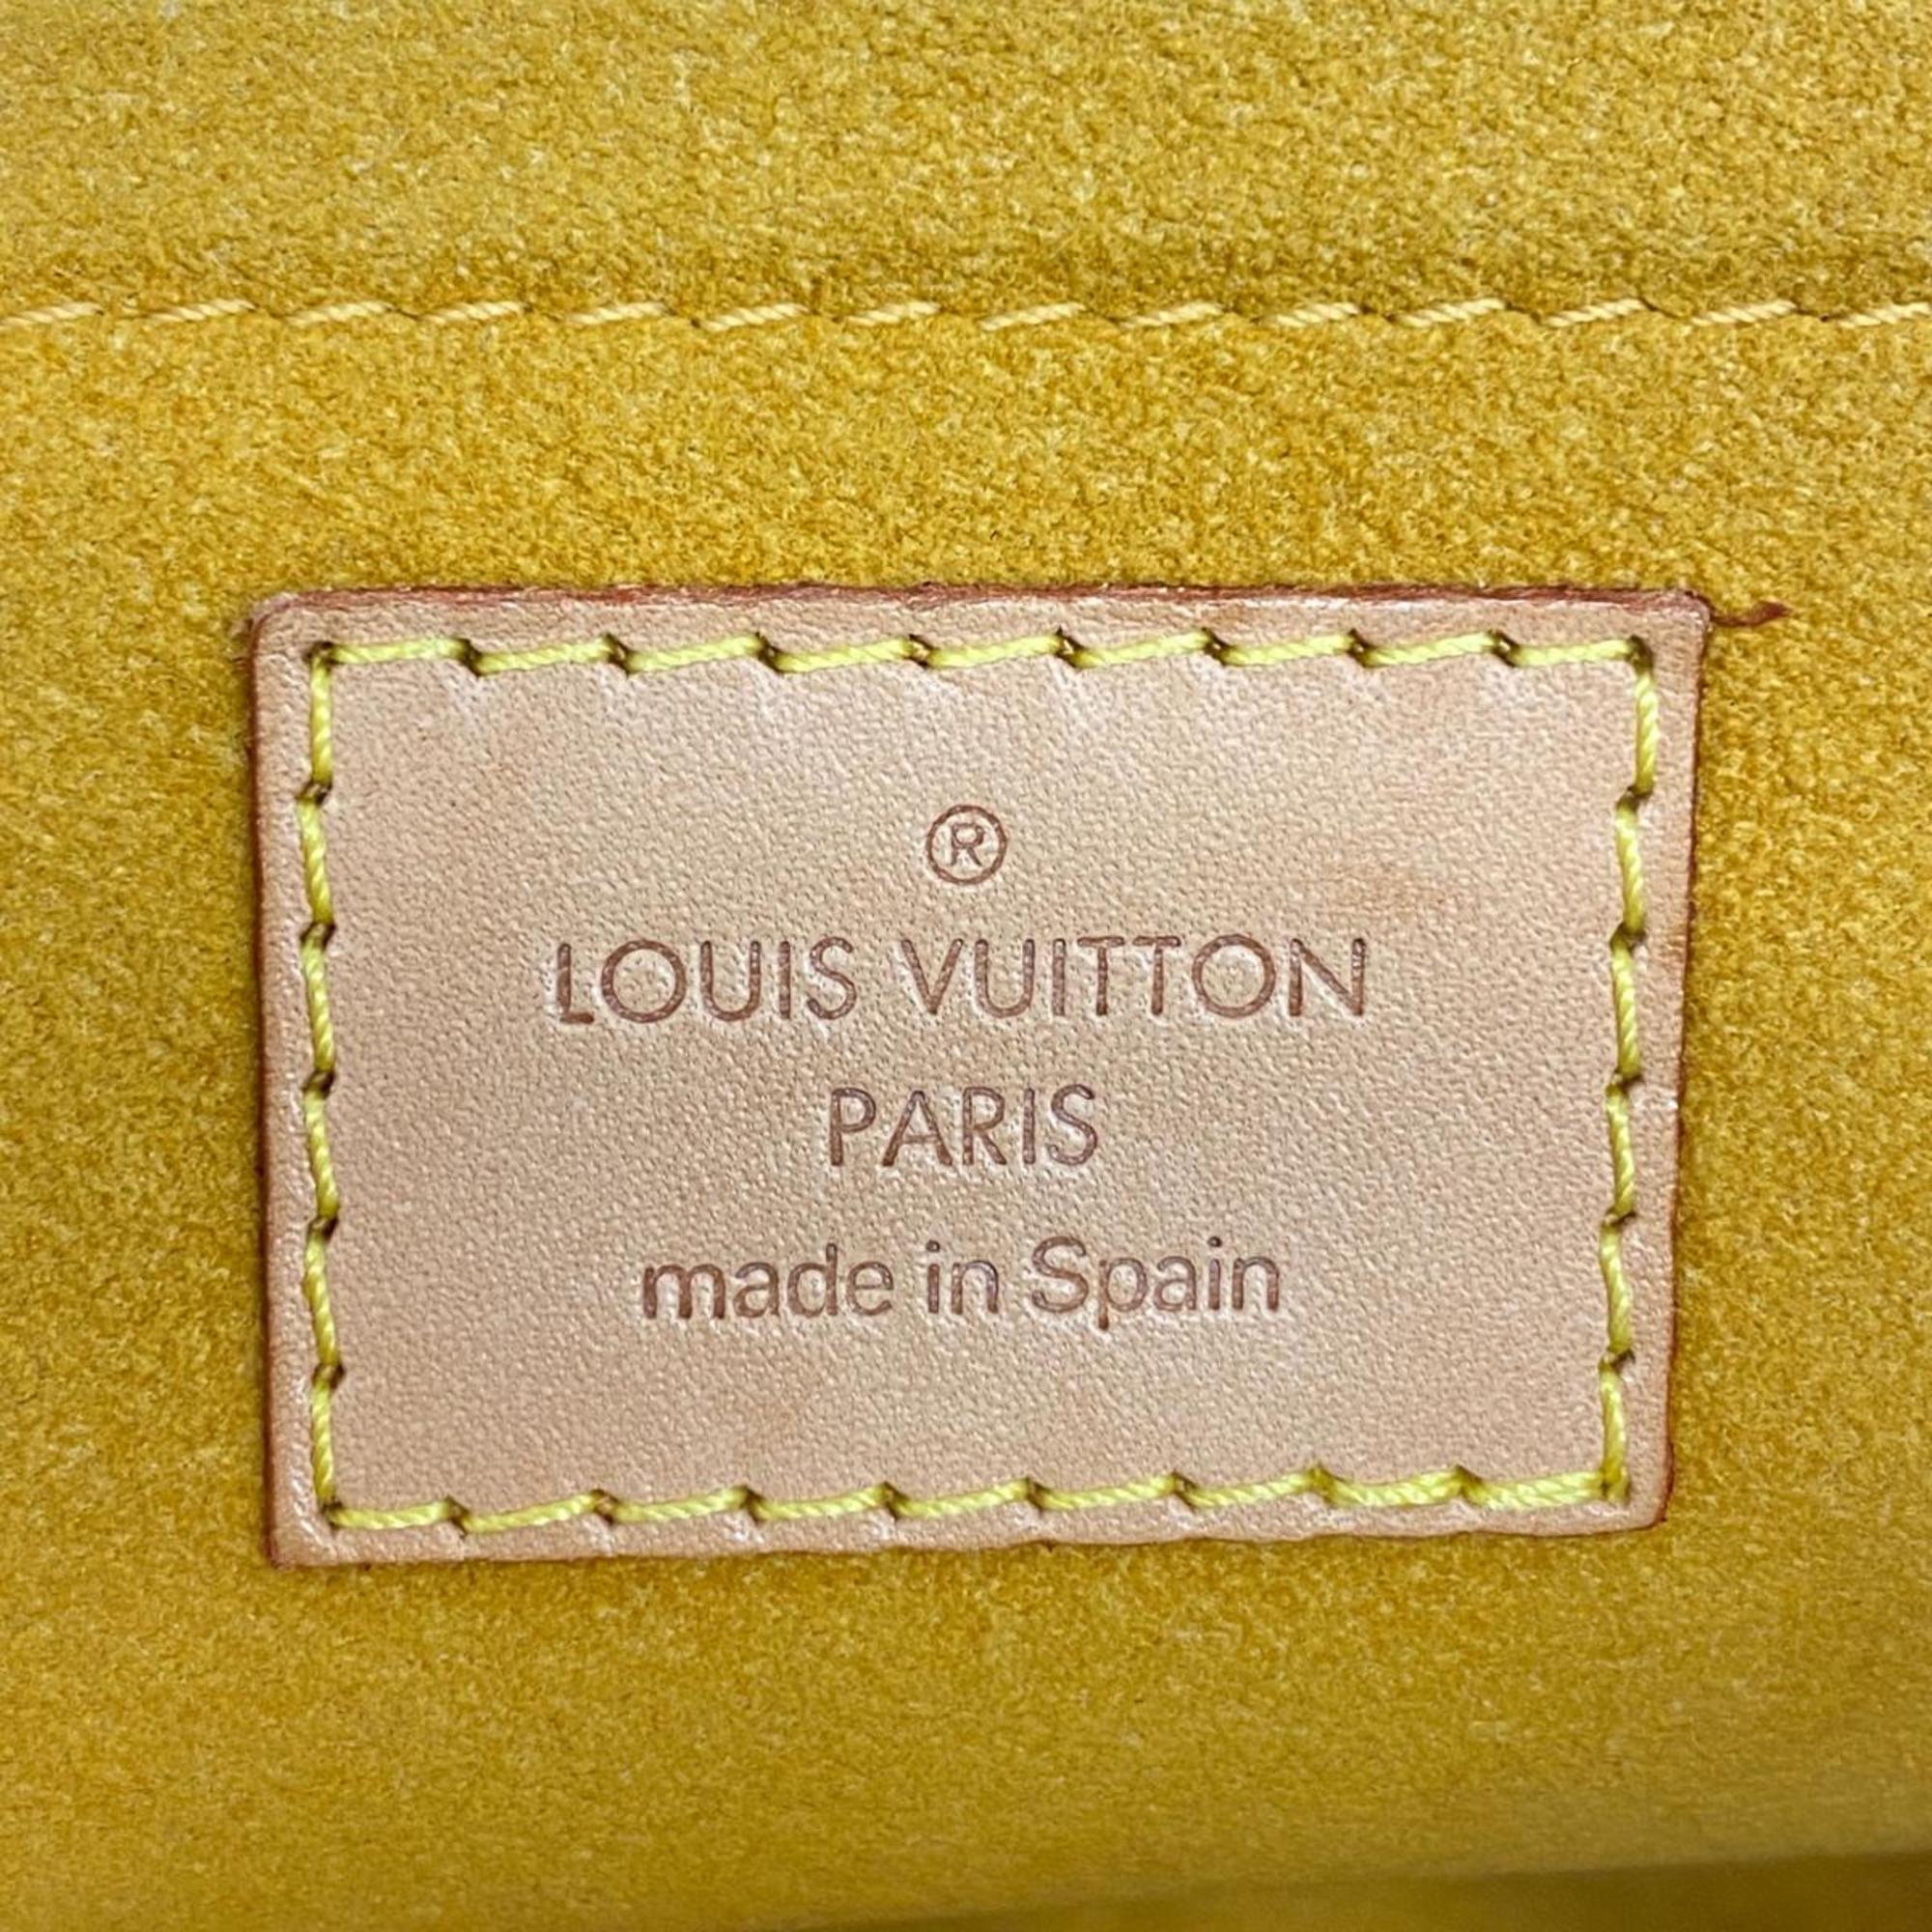 ルイ・ヴィトン(Louis Vuitton) ルイ・ヴィトン ハンドバッグ モノグラム・デニム プリーティ M95050 ブルーレディース